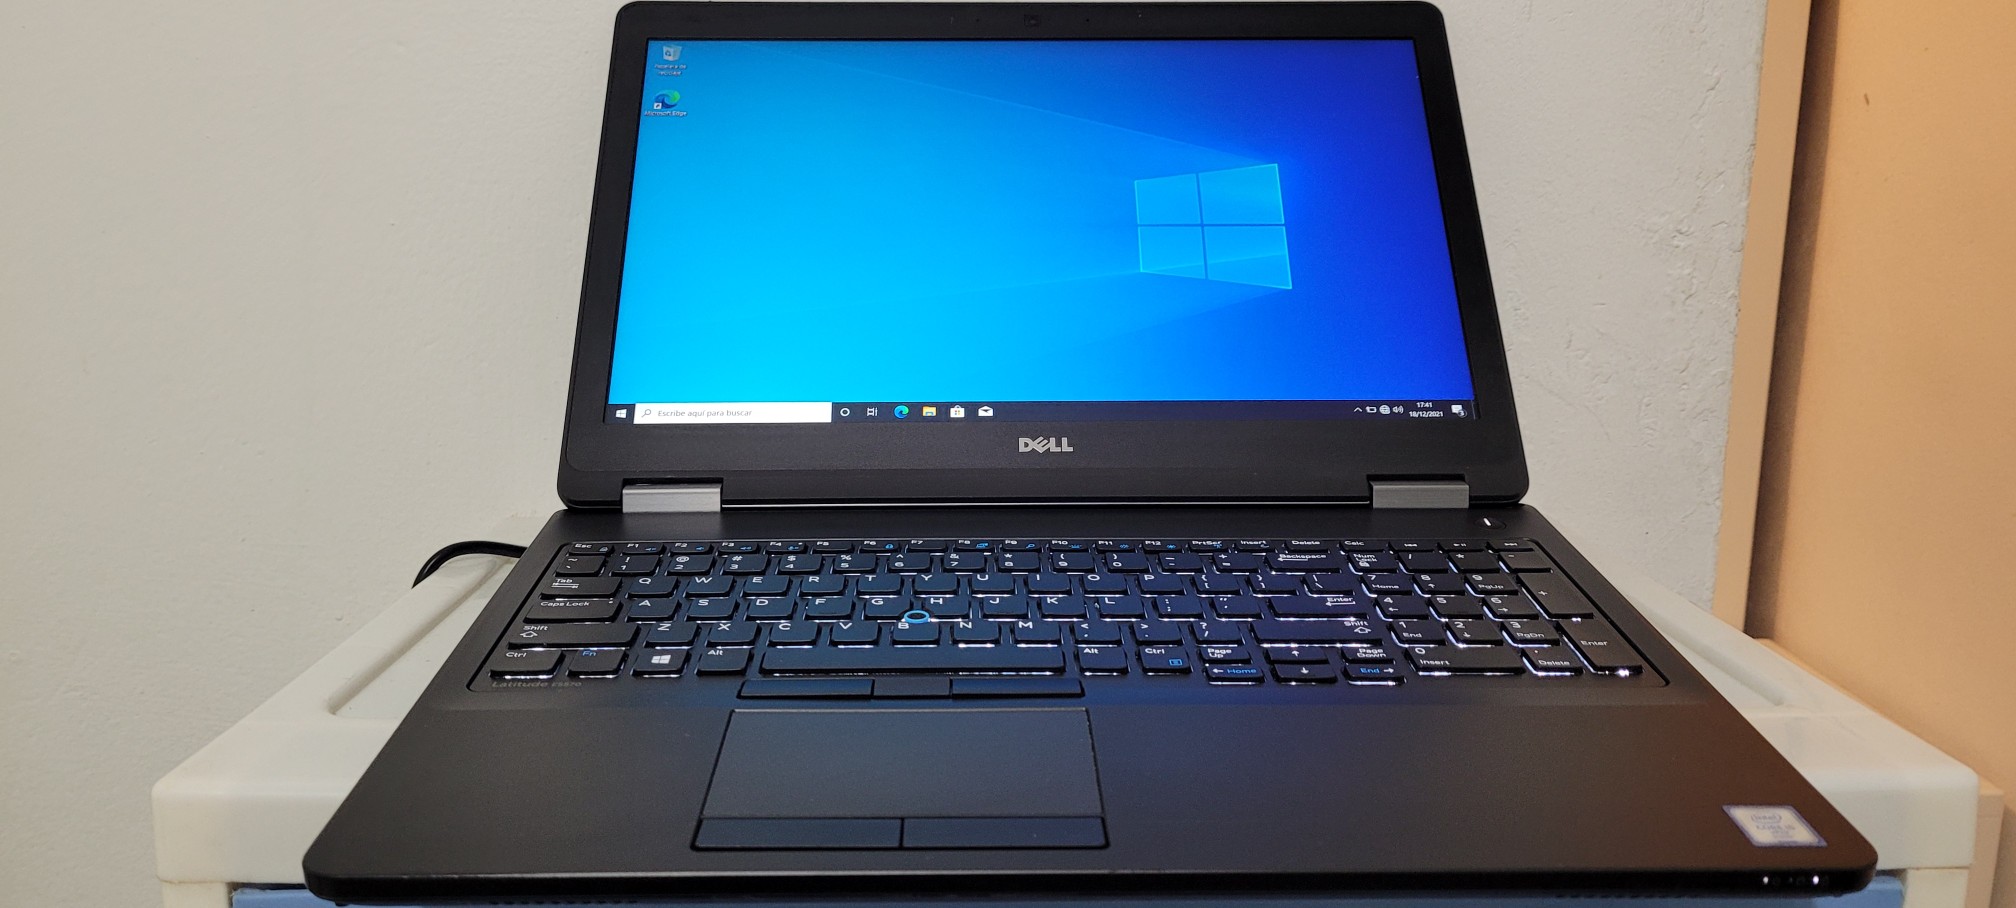 computadoras y laptops - Dell 5570 17 Pulg Core i5 6ta Gen Ram 8gb ddr4 Disco 128gb Y 500gb full 0